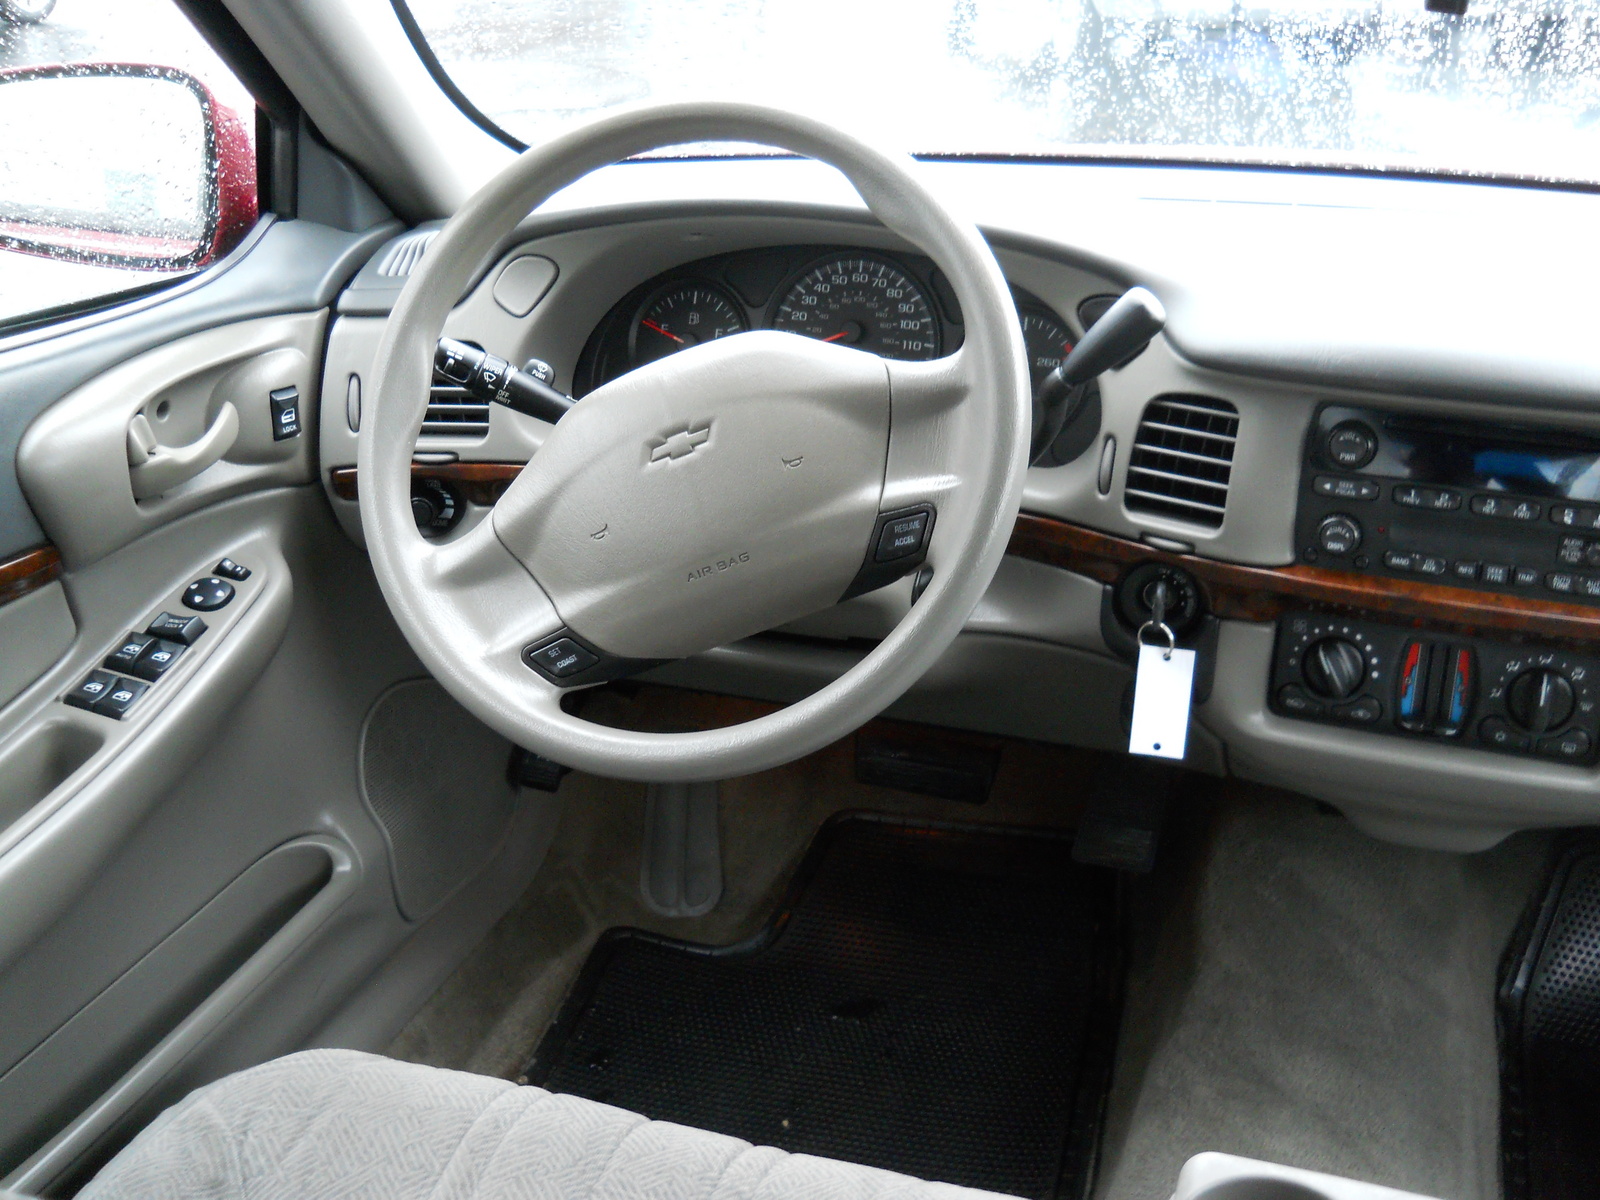 2005 Chevrolet Impala - Interior Pictures - CarGurus